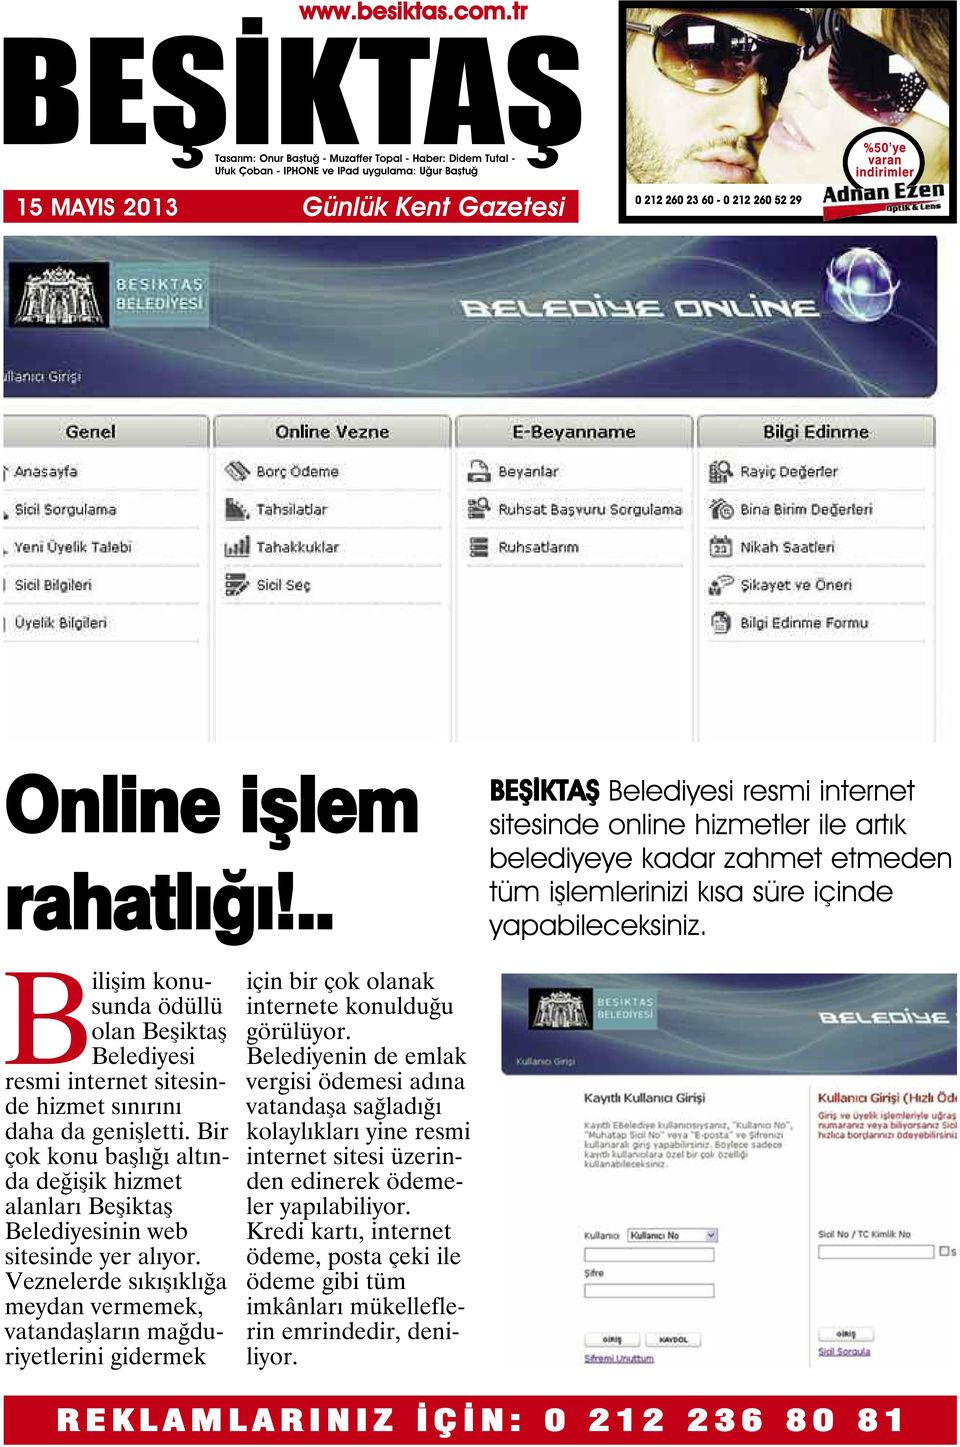 Bilişim konusunda ödüllü olan Beşiktaş Belediyesi resmi internet sitesinde hizmet sınırını daha da genişletti.